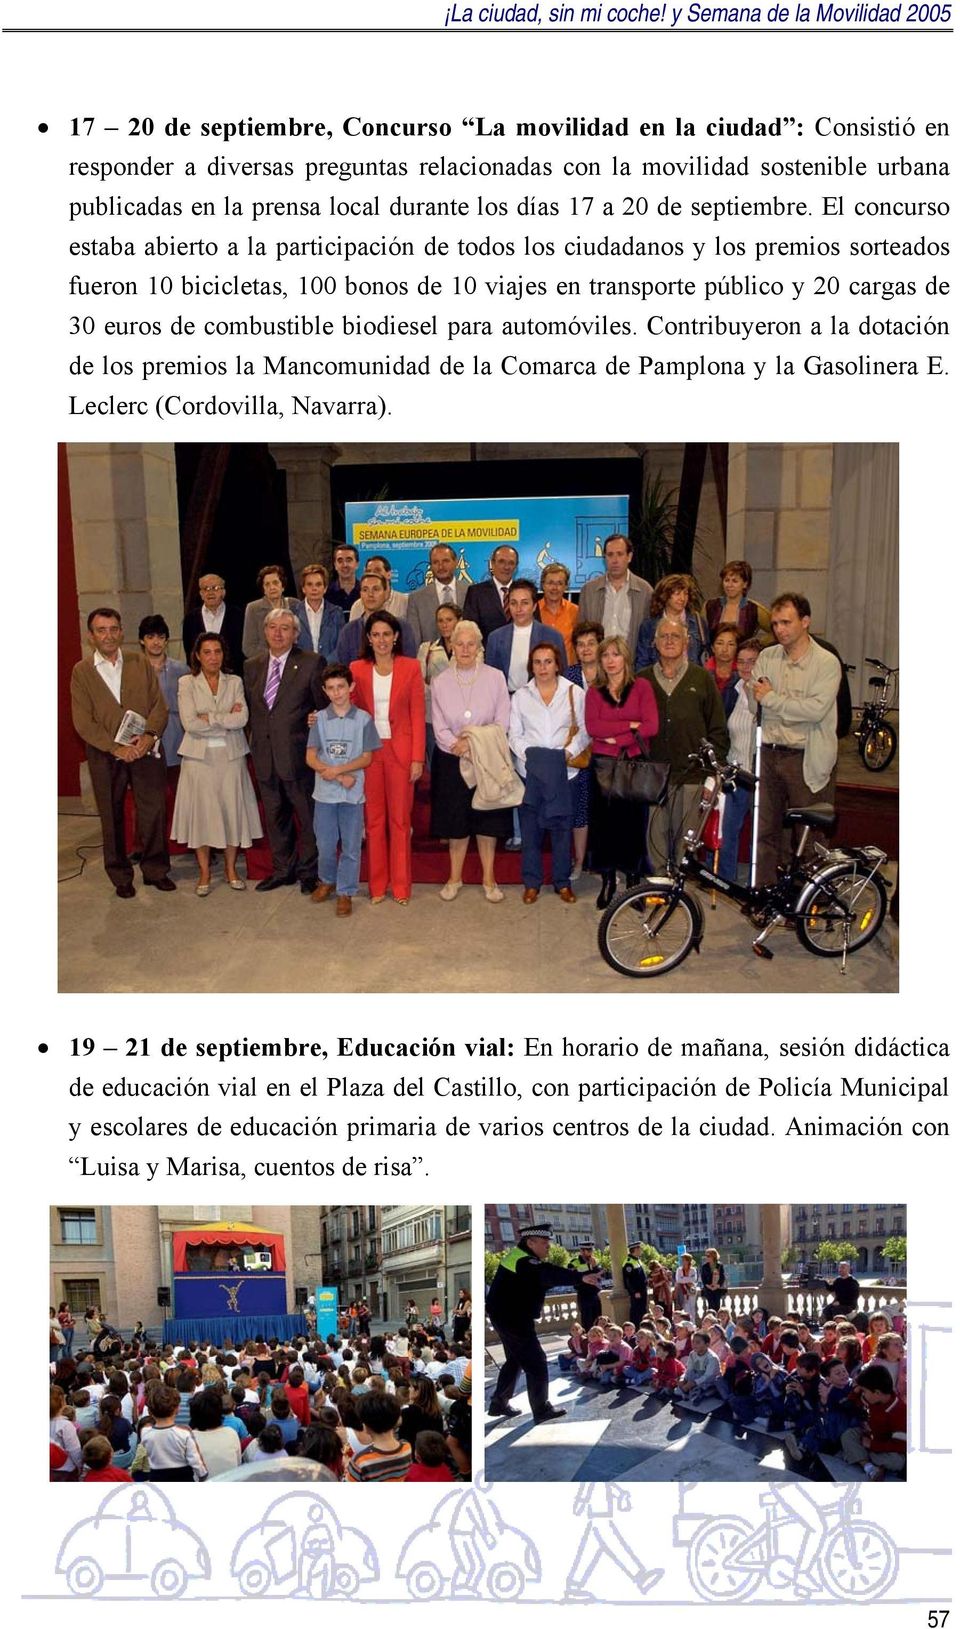 El concurso estaba abierto a la participación de todos los ciudadanos y los premios sorteados fueron 10 bicicletas, 100 bonos de 10 viajes en transporte público y 20 cargas de 30 euros de combustible